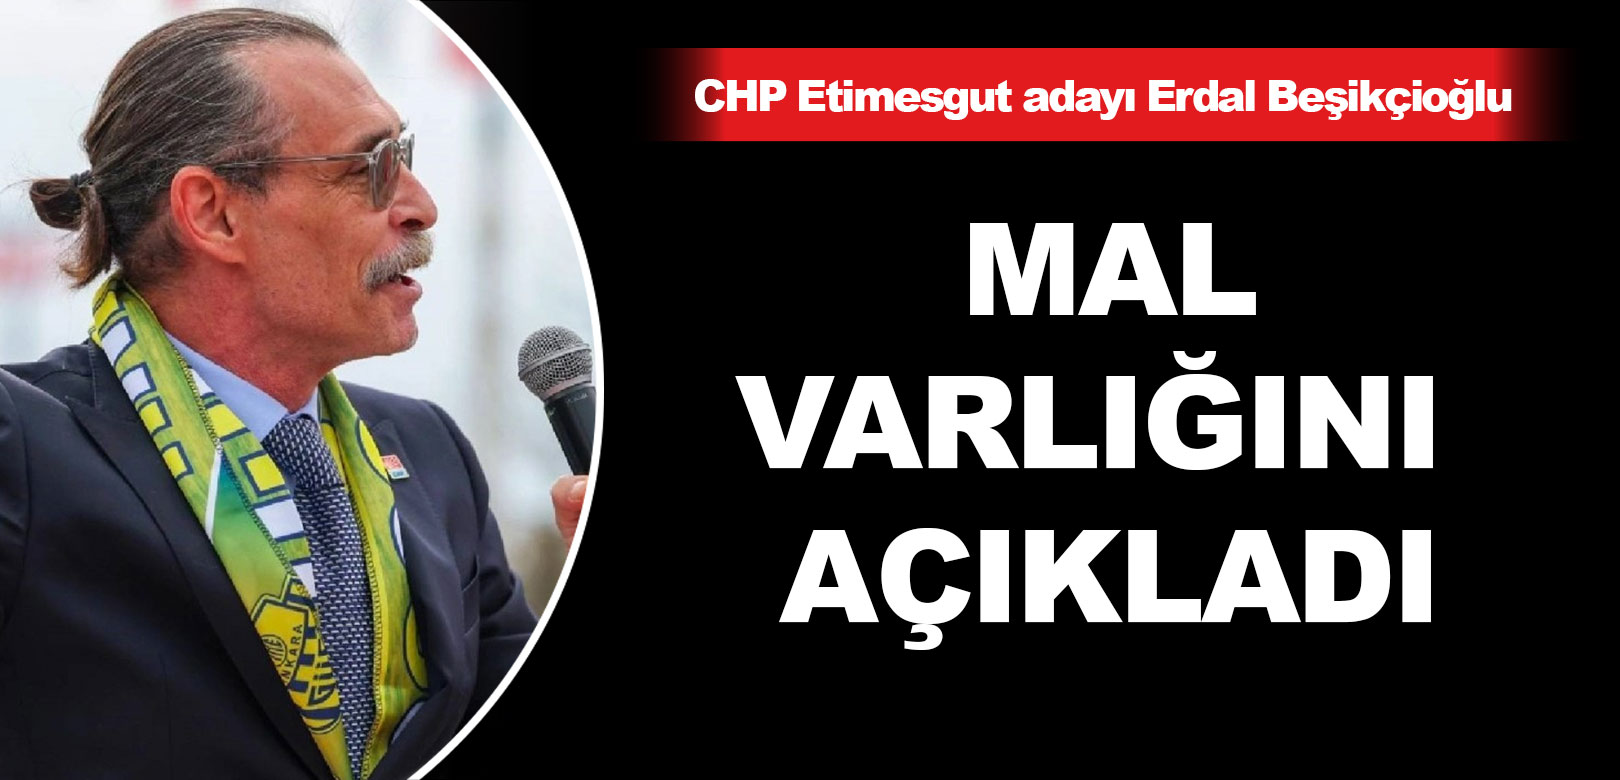 CHP'nin Etimesgut adayı Erdal Beşikçioğlu mal varlığını açıkladı